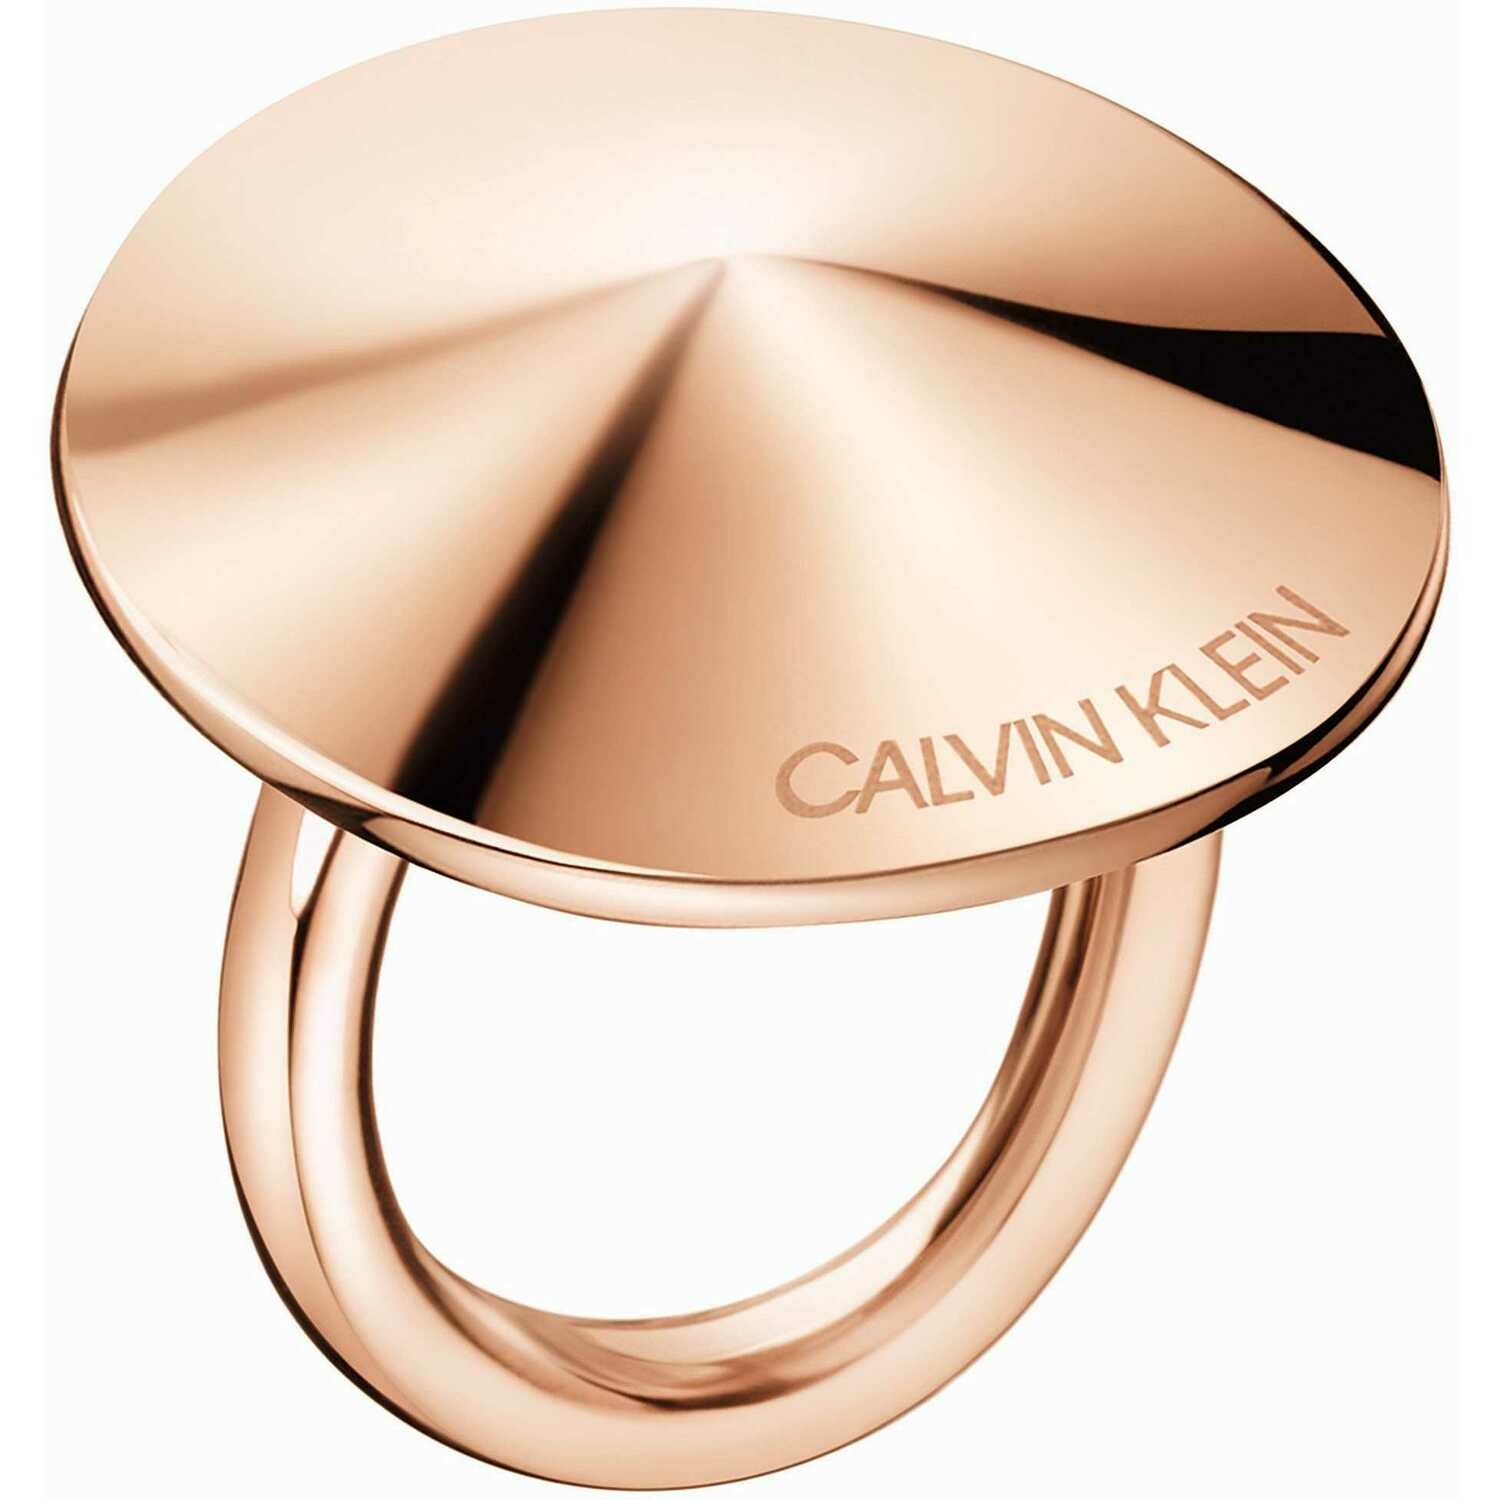 Calvin Klein Spinner taille 52